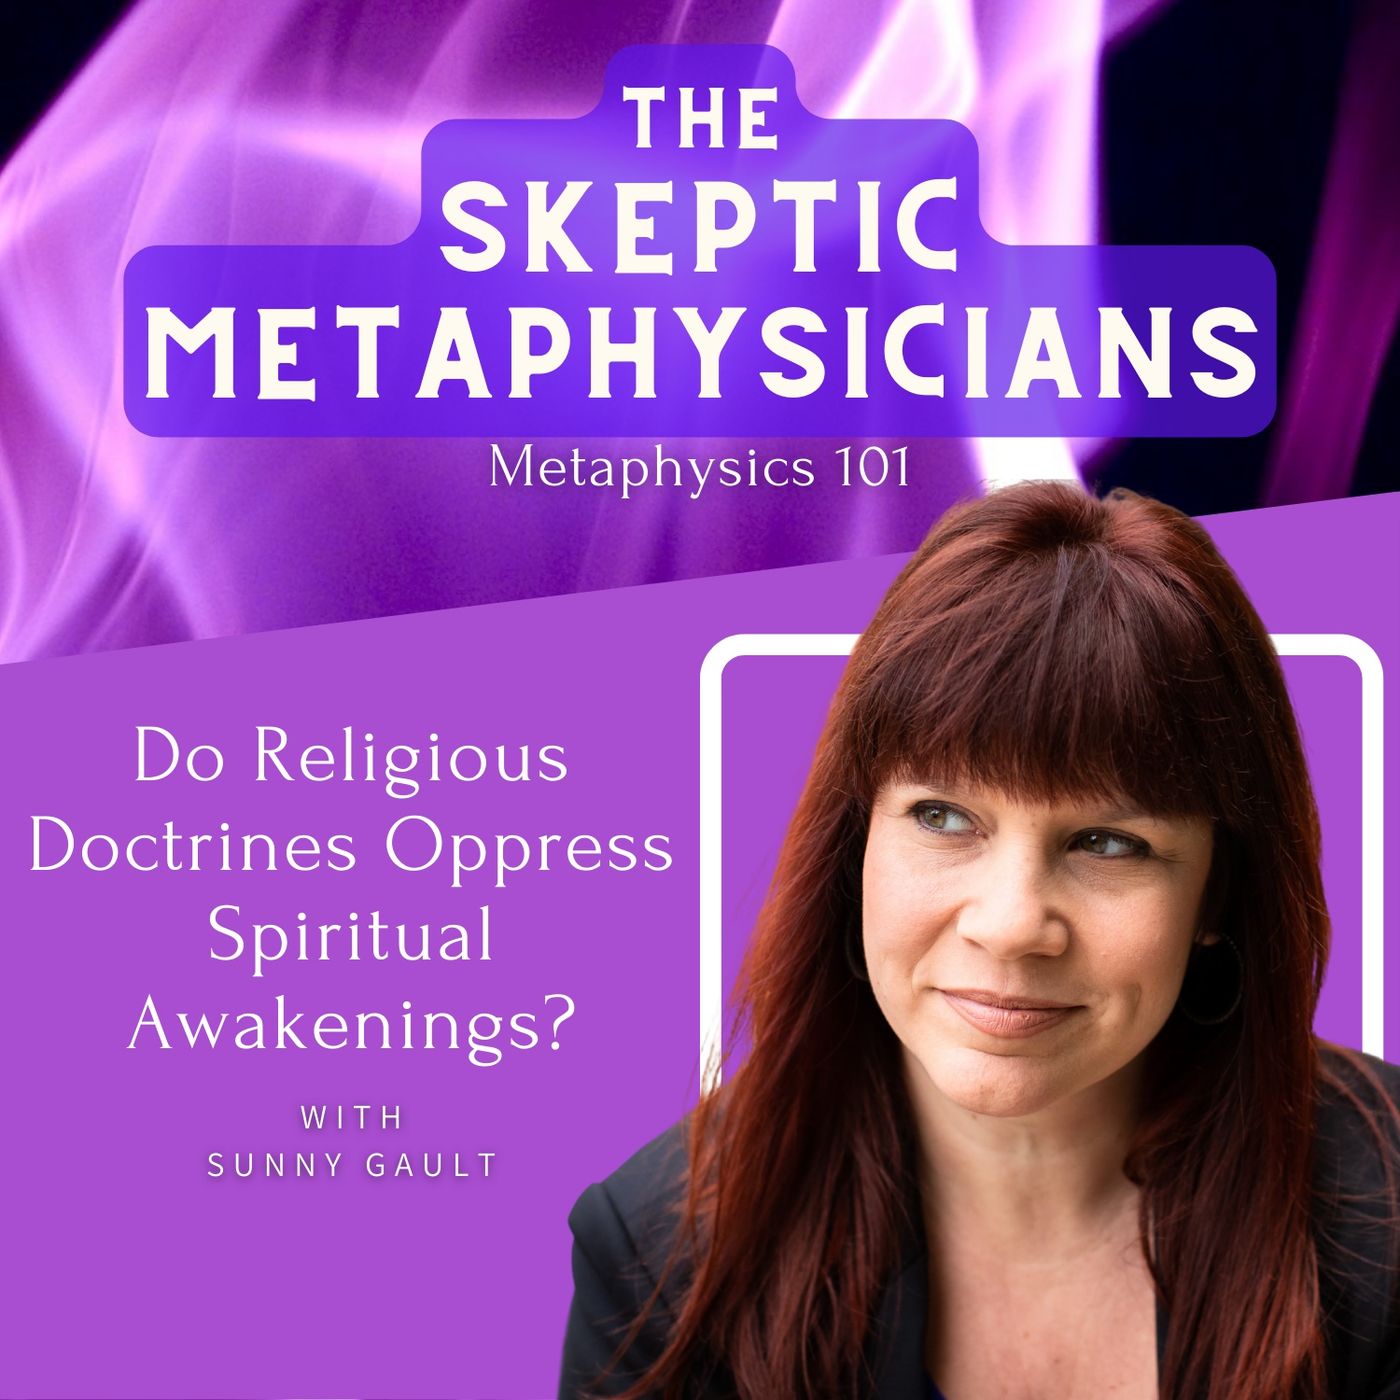 Do Religious Doctrines Help or Oppress Spiritual Awakenings? | Sunny Gault